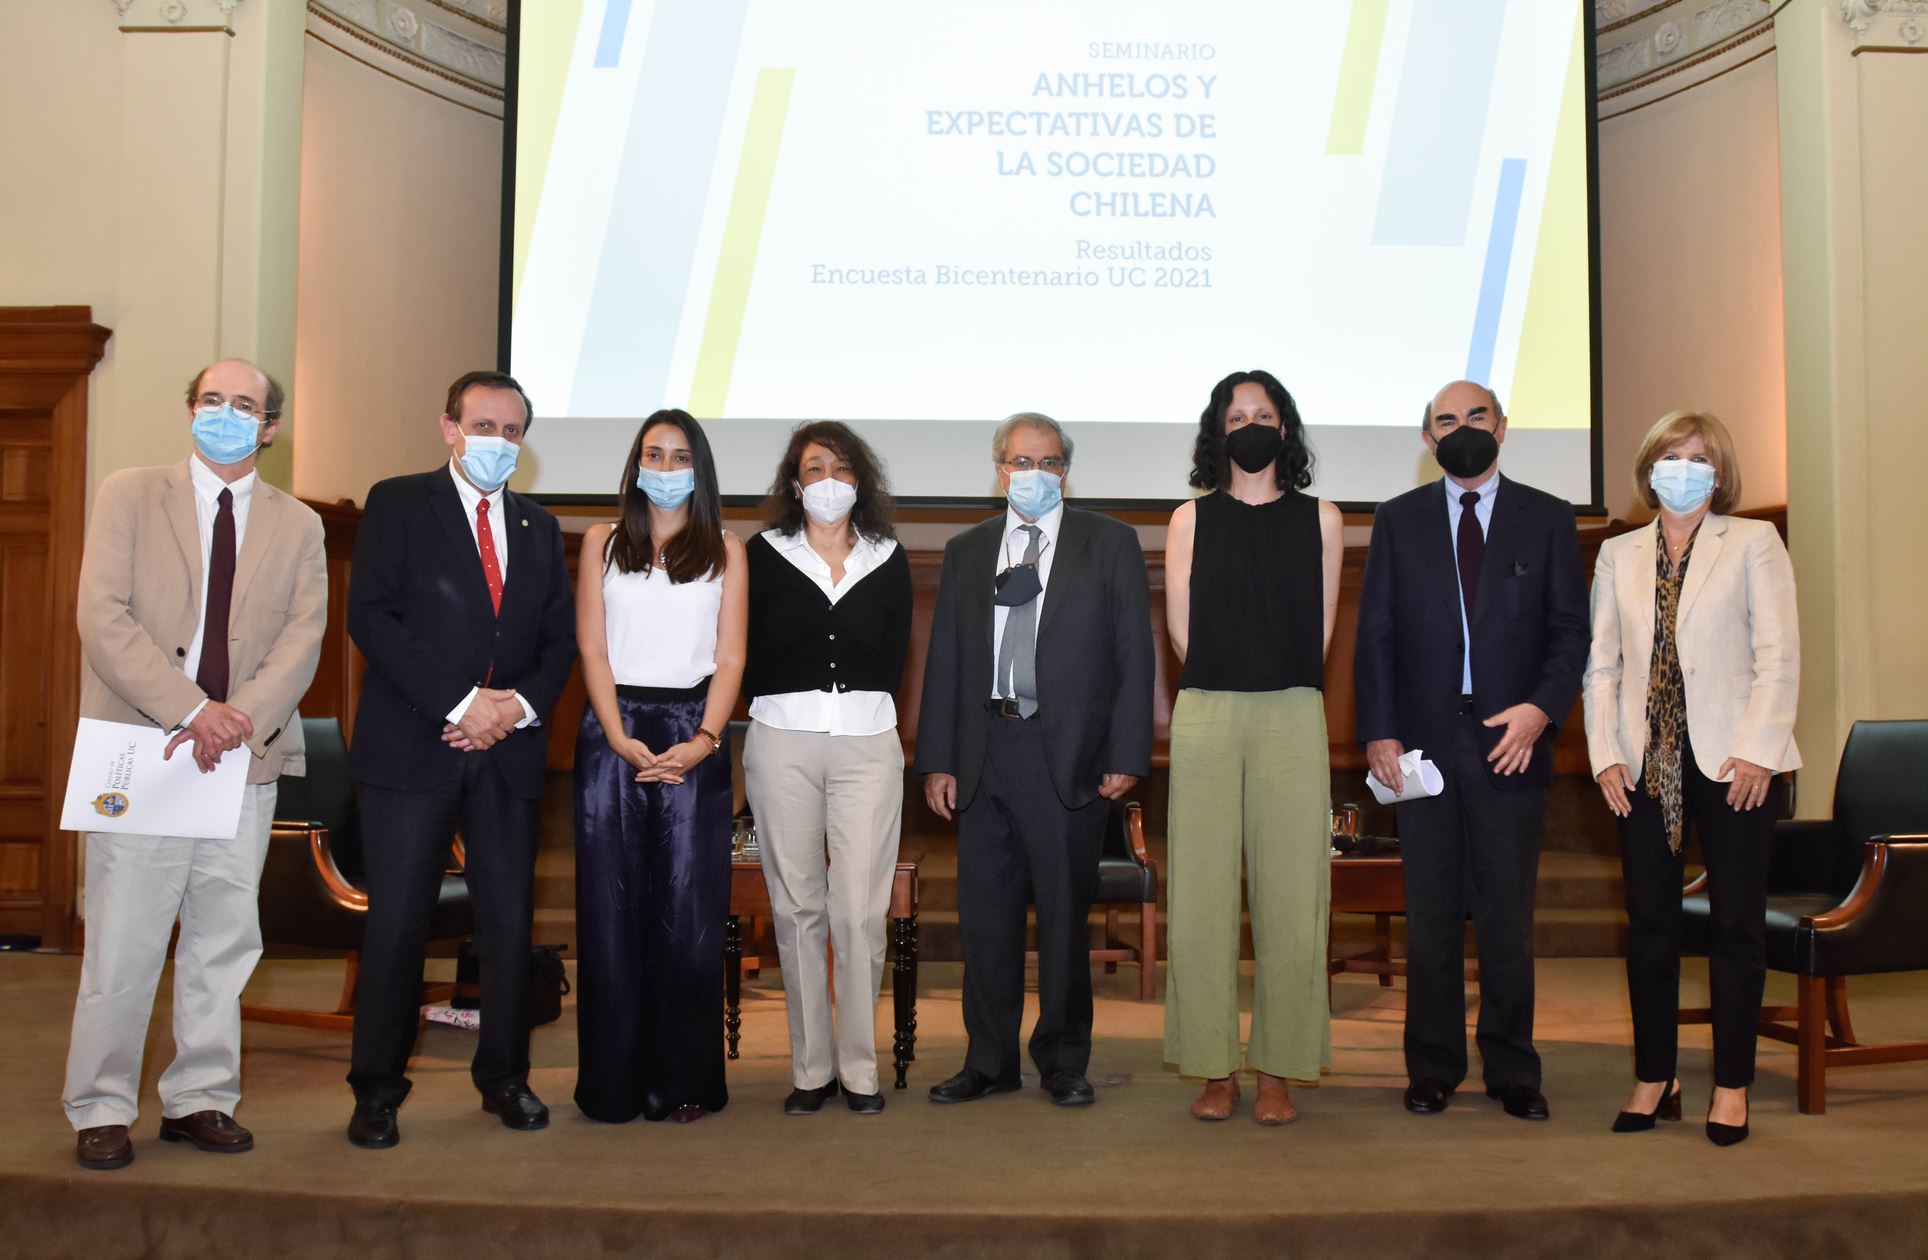 Seminario resultados Encuesta Bicentenario 2021: anhelos y expectativas de la sociedad chilena